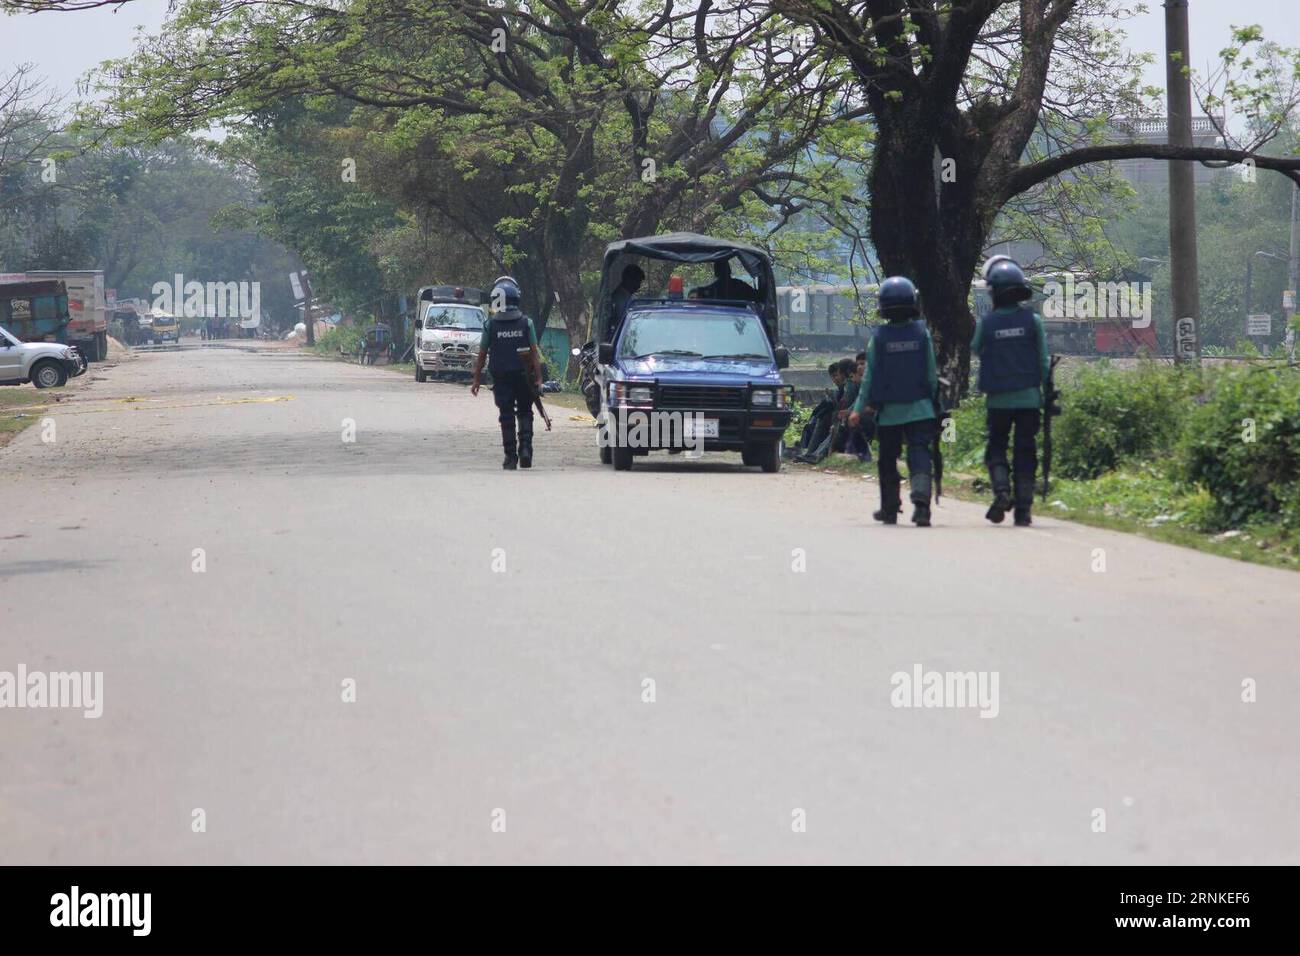 (170327) -- DHAKA, le 27 mars 2017 -- la police du Bangladesh garde une route principale déserte dans la ville portuaire du Bangladesh, Chittagong, le 27 mars 2017. L'opération Twilight, destinée à faire éclater une tanière militante menée par des forces conjointes dirigées par le bataillon Para-Commando de l'armée du Bangladesh lundi, a déversé son quatrième jour depuis vendredi, faisant jusqu'à présent huit morts, y compris des policiers et deux militants.) (zy) BANGLADESH-CHITTAGONG-OPERATION-MILITANT-HIDEOUT Rabby PUBLICATIONxNOTxINxCHN Dhaka Mars 27 2017 Garde de police du Bangladesh une route principale déserte au Bangladesh S Seaport City Chittagong LE 27 2017 mars opération Banque D'Images